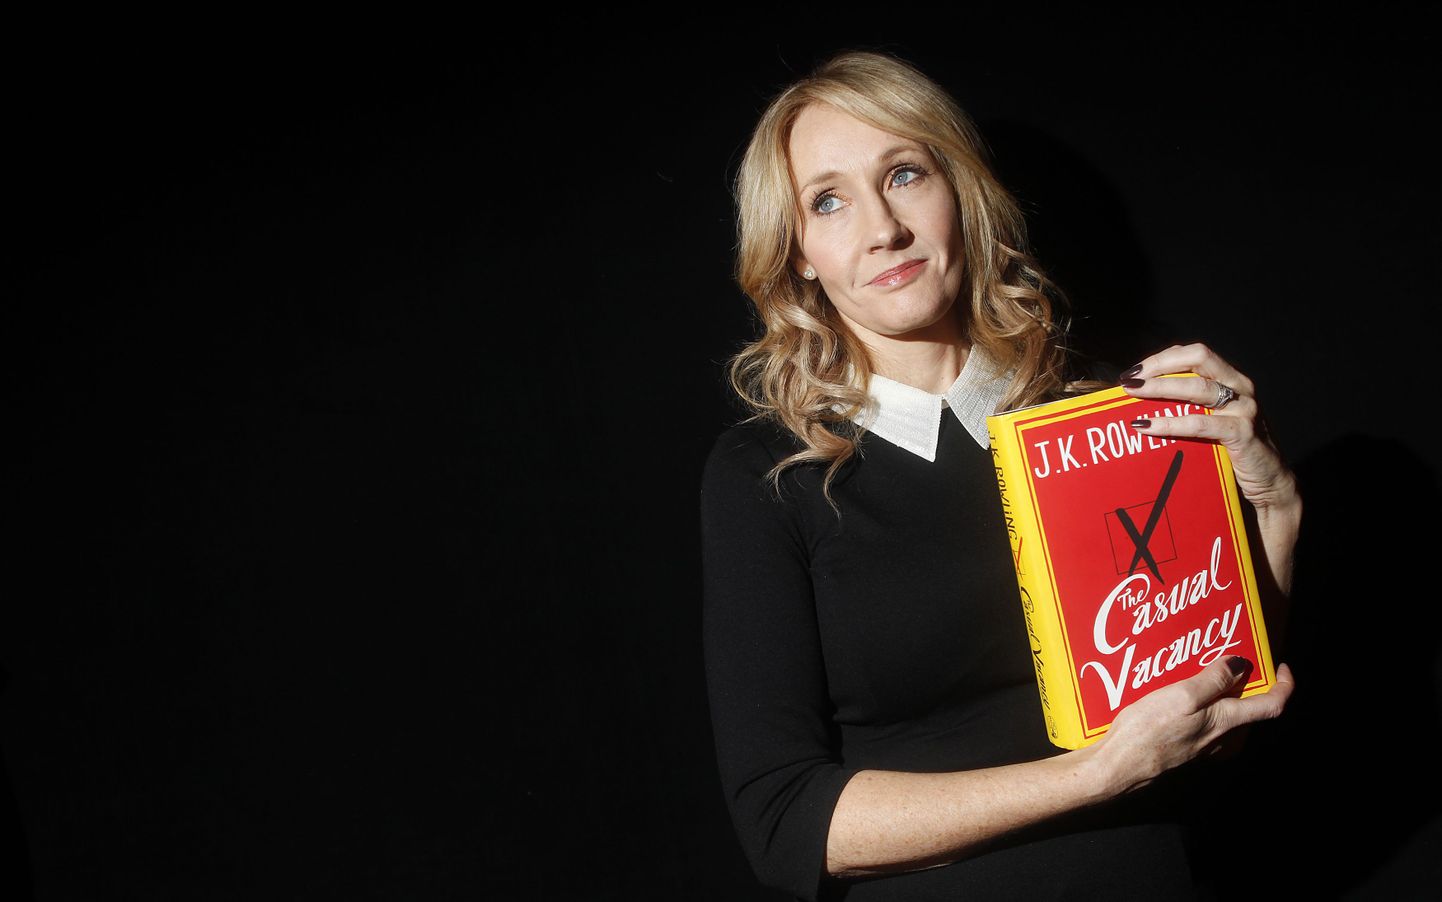 Möödunud aasta lõpul avaldas J.K. Rowling oma esimese täiskasvanute raamatu «The Casual Vacancy», mis on avaldatud ka eesti keeles pealkirjaga «Ootamatu võimalus».